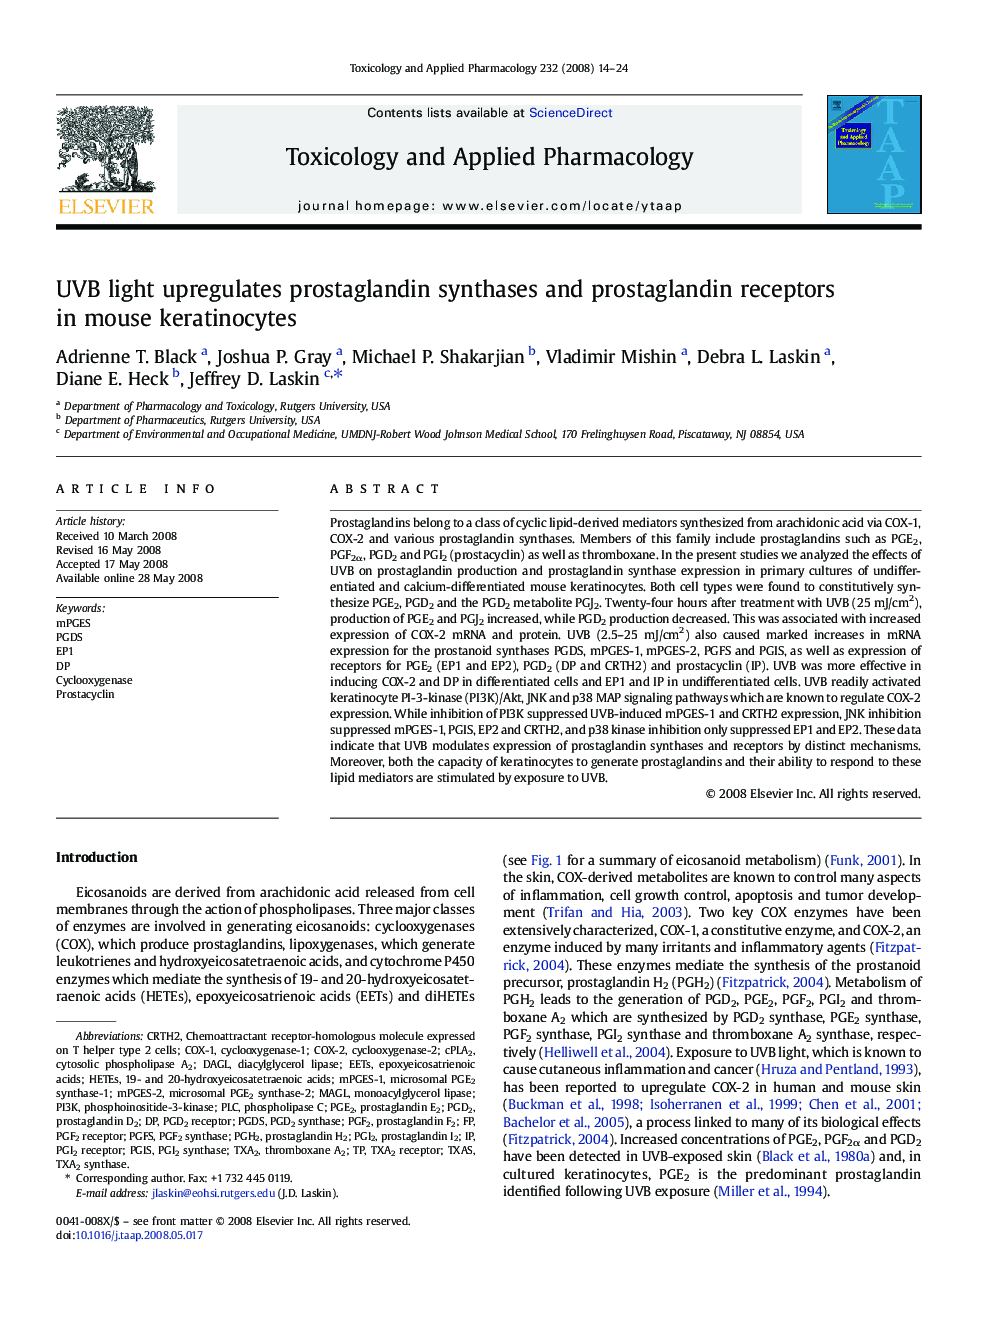 UVB light upregulates prostaglandin synthases and prostaglandin receptors in mouse keratinocytes